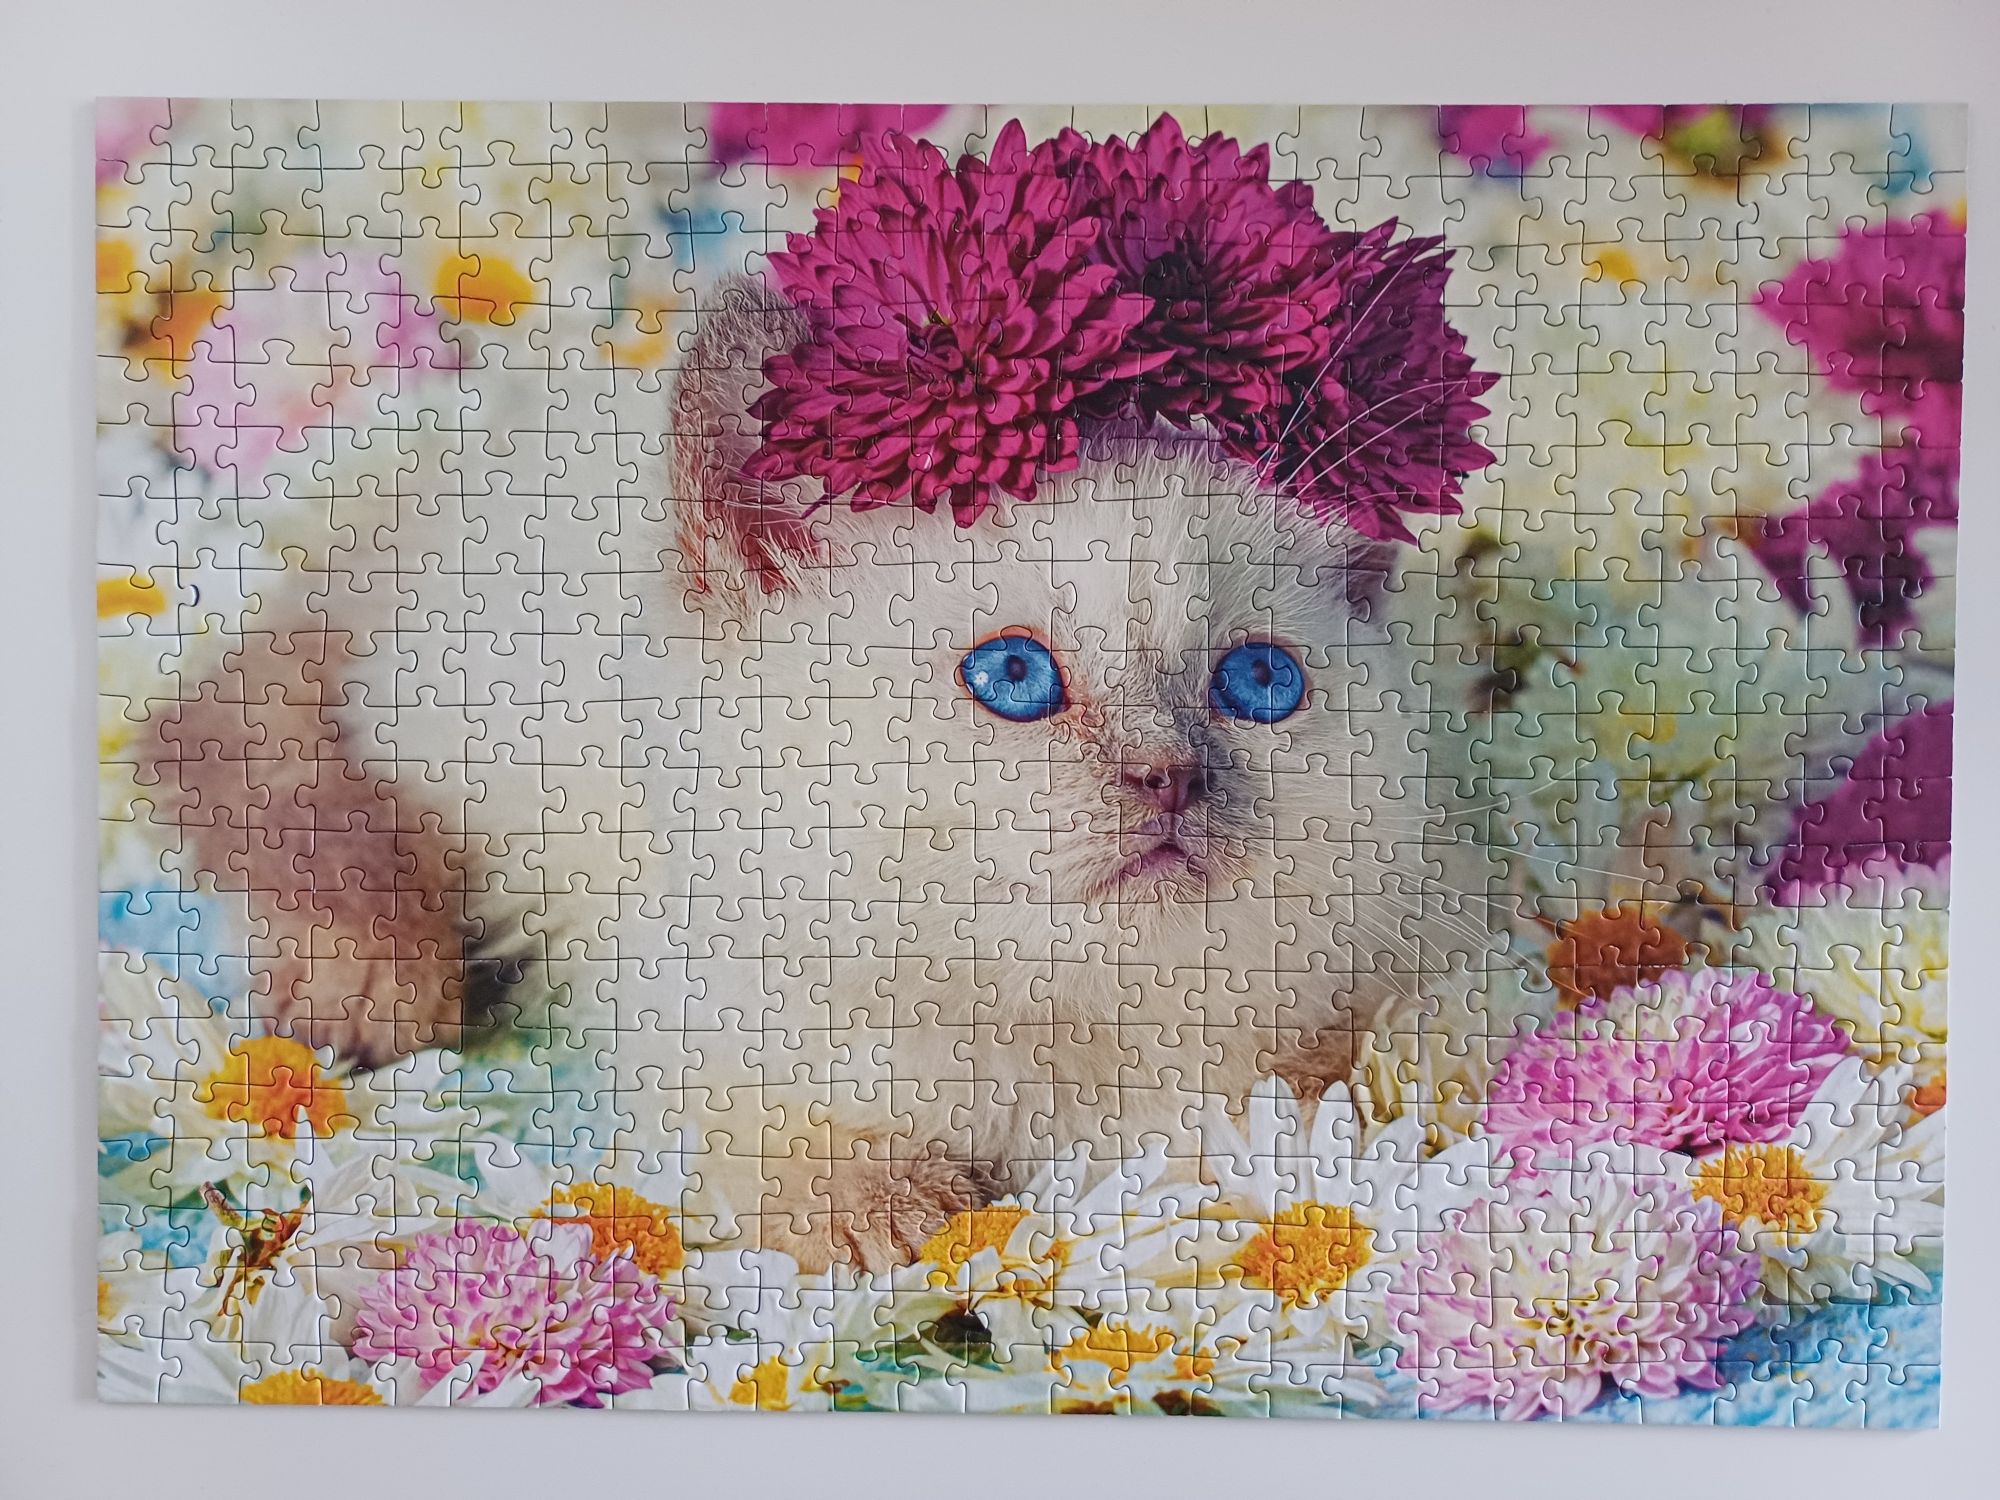 Puzzle Trefl 2x500,1000 kotki edycja limitowana